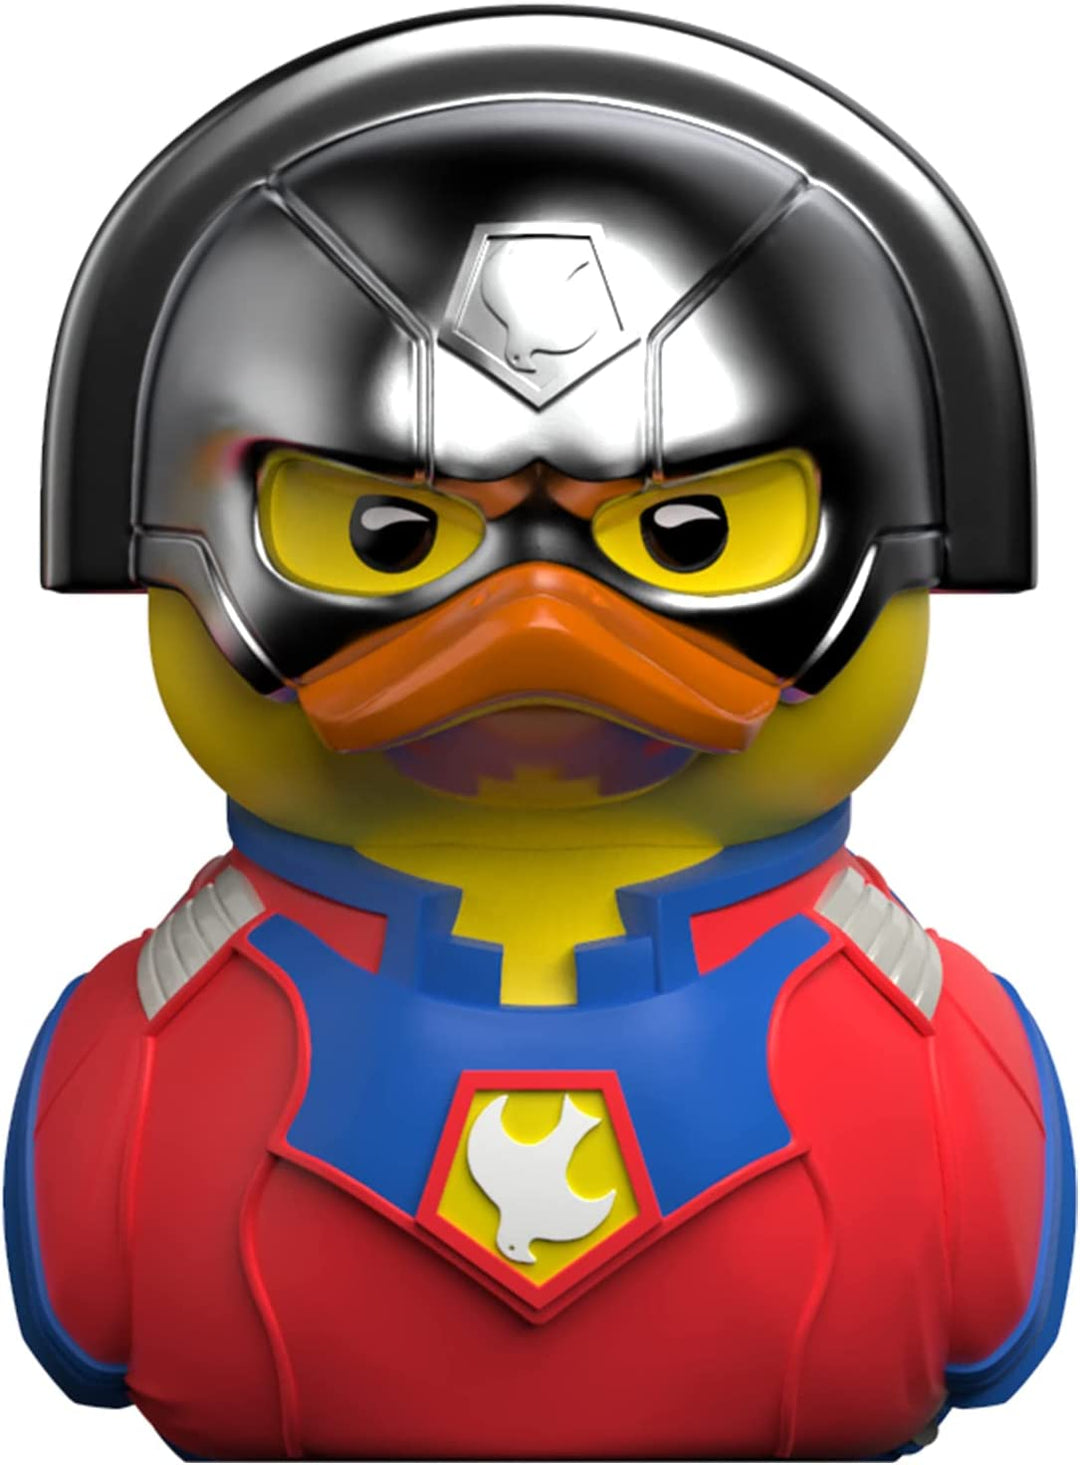 DC Comics The Suicide Squad Peacemaker Tubbz Duck